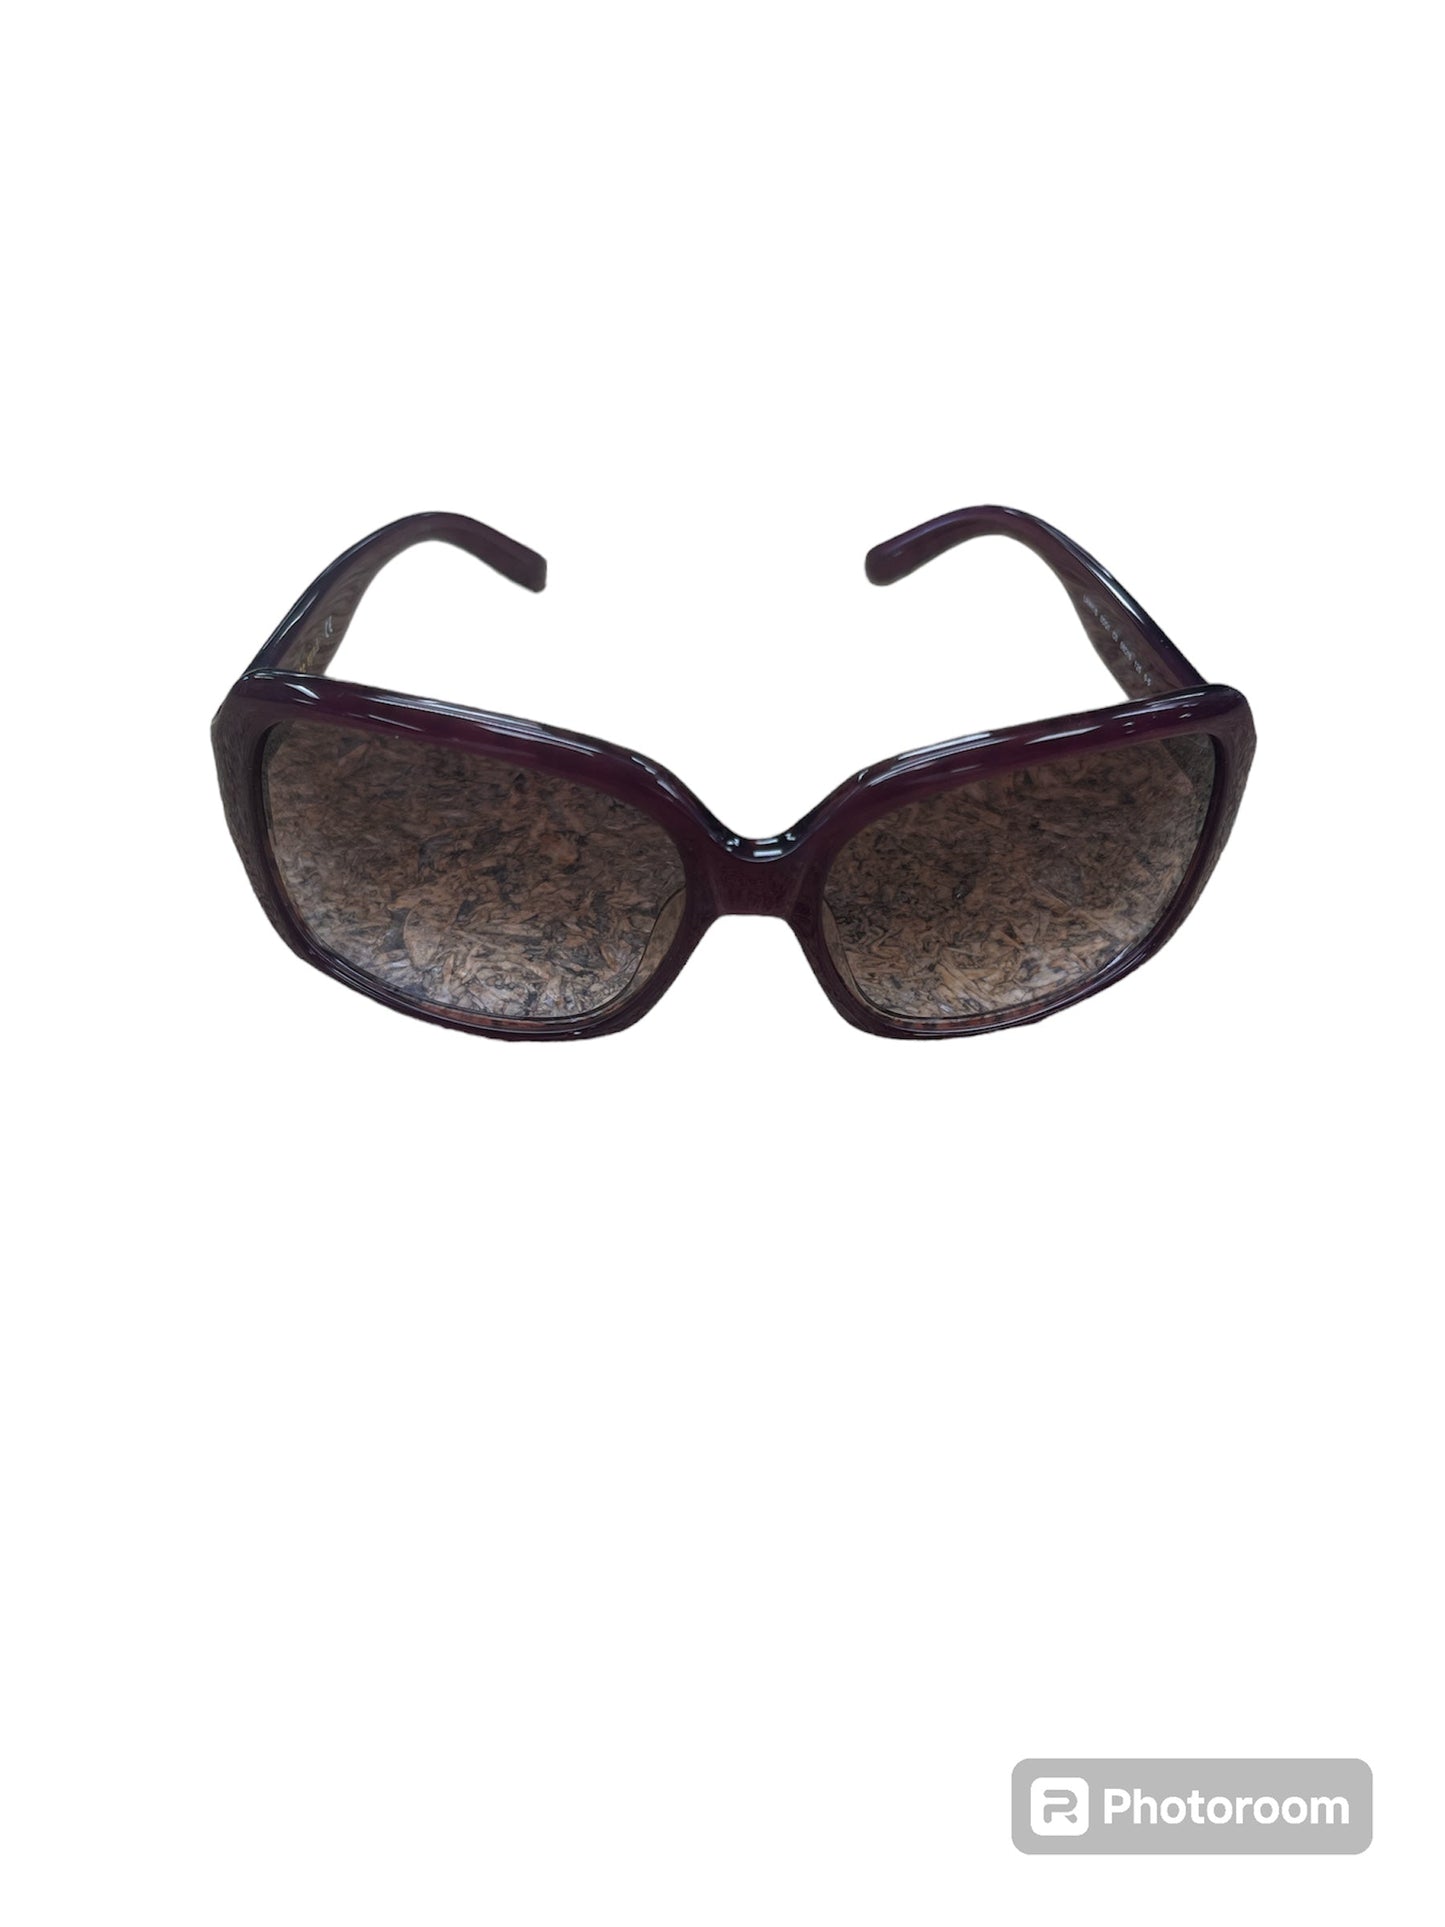 Sunglasses Designer Kate Spade, Size 01 Piece